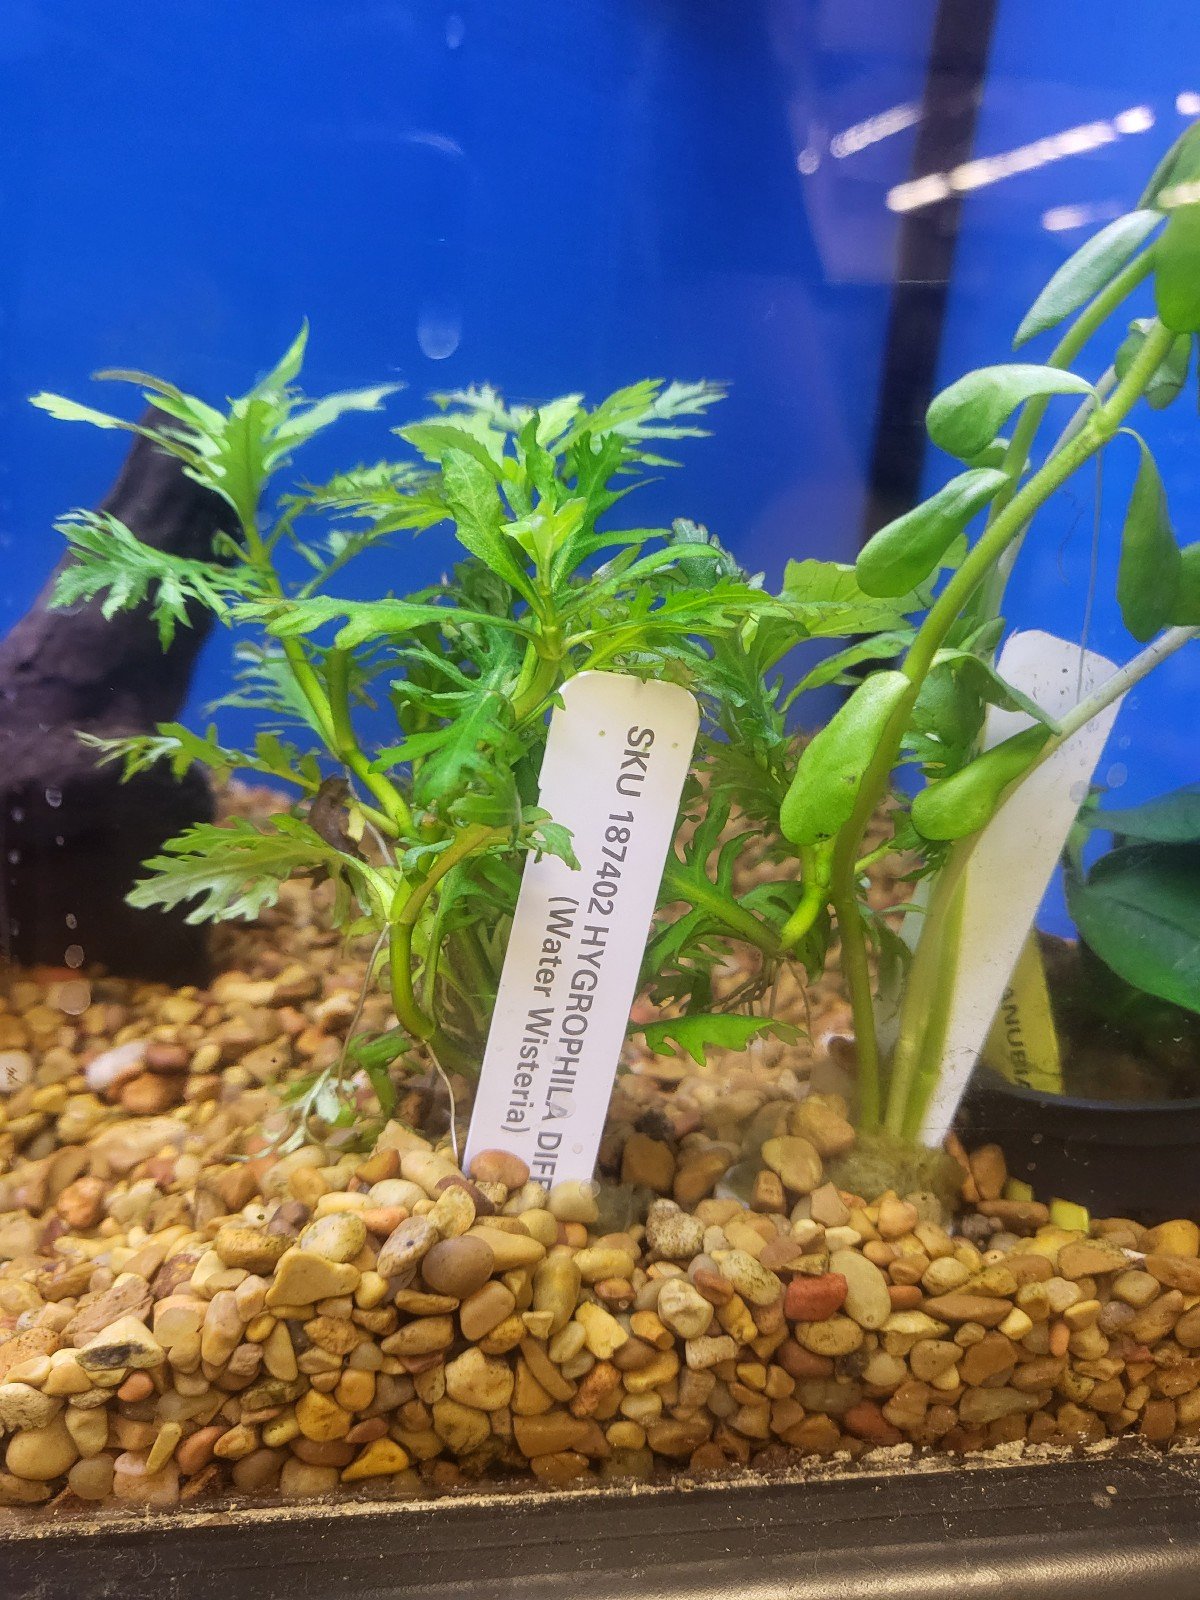 Live aquarium plants - water sprite - aquarium decor 5Eg1Imi42